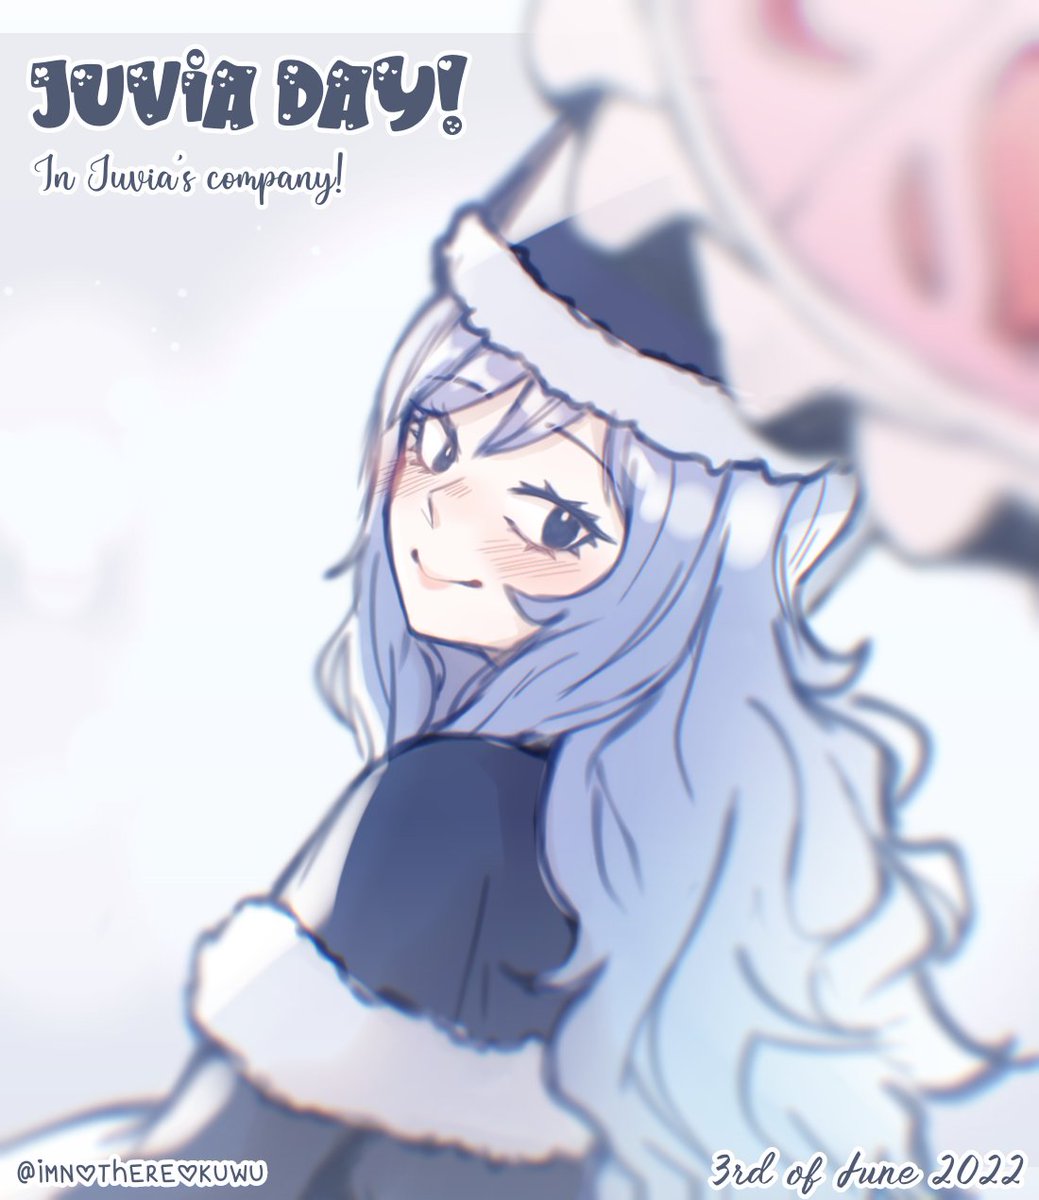 ⟨Juvia Day!⟩
» 3rd of June 2022

#FairyTail #JuviaLockser #JuviaDay